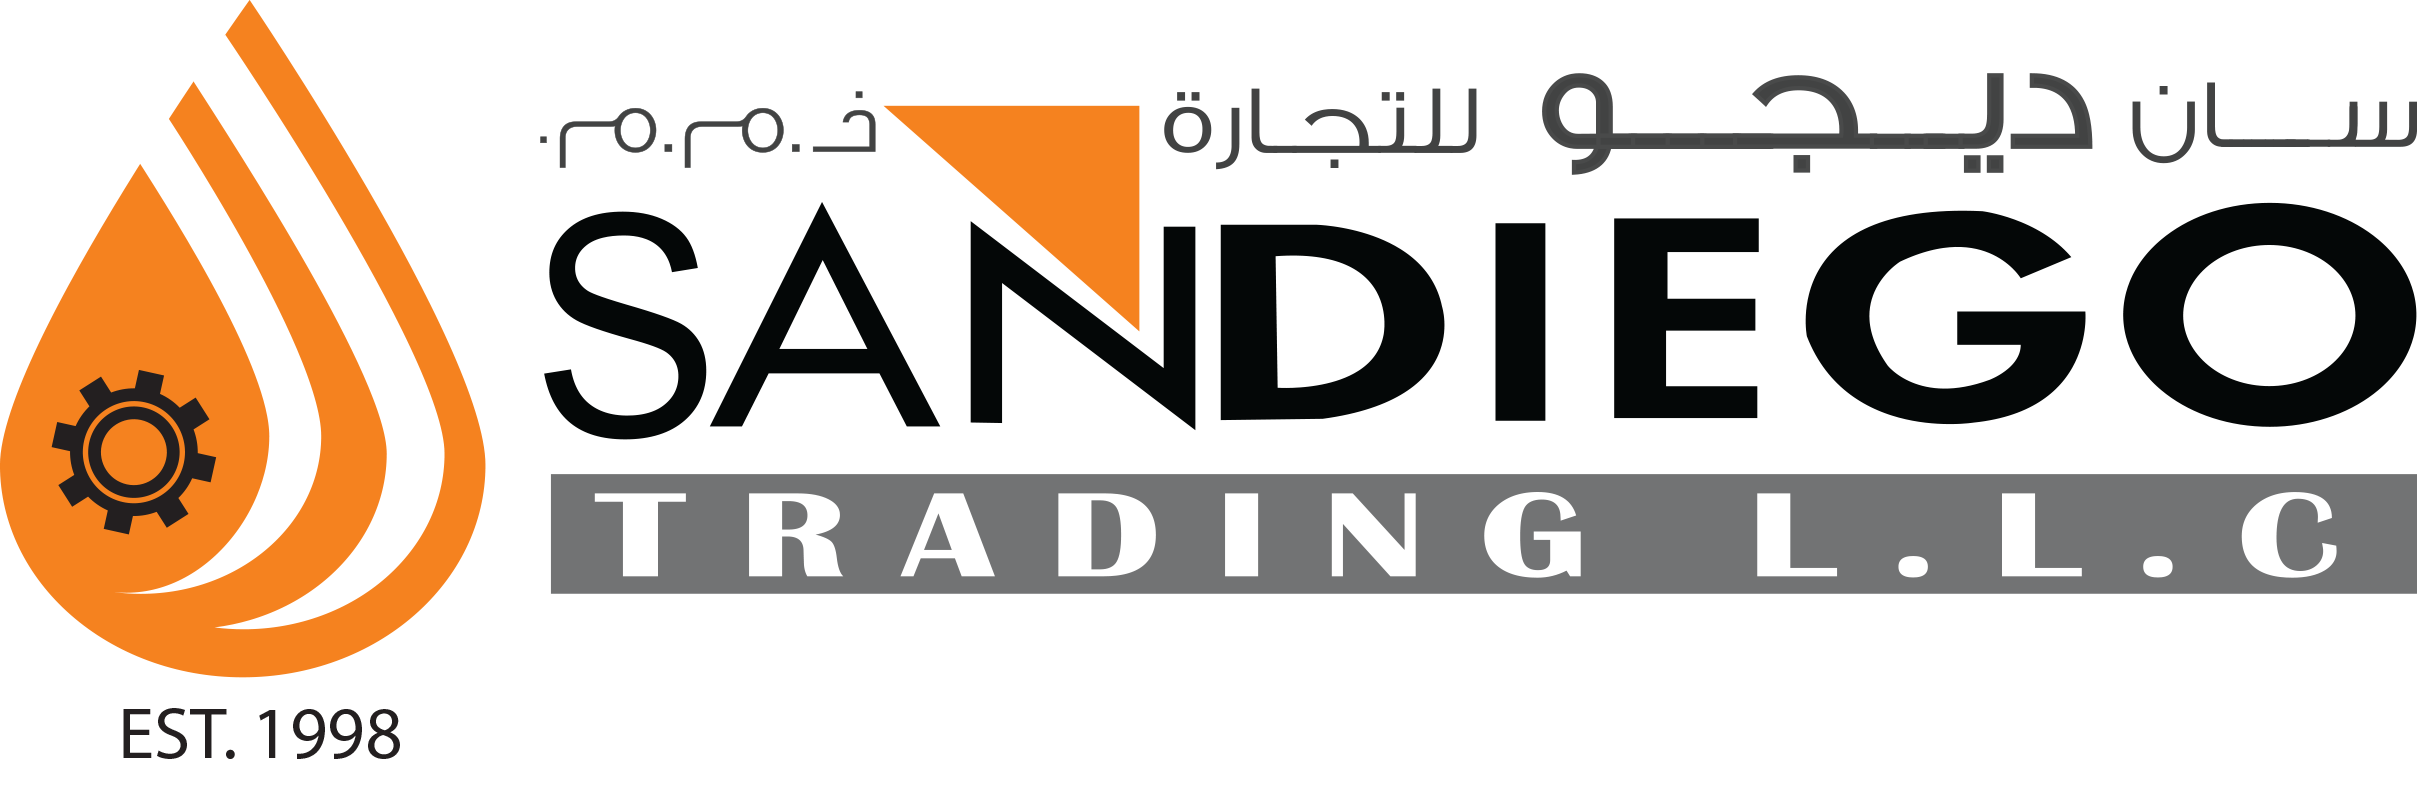 Sandiego Trading LLC